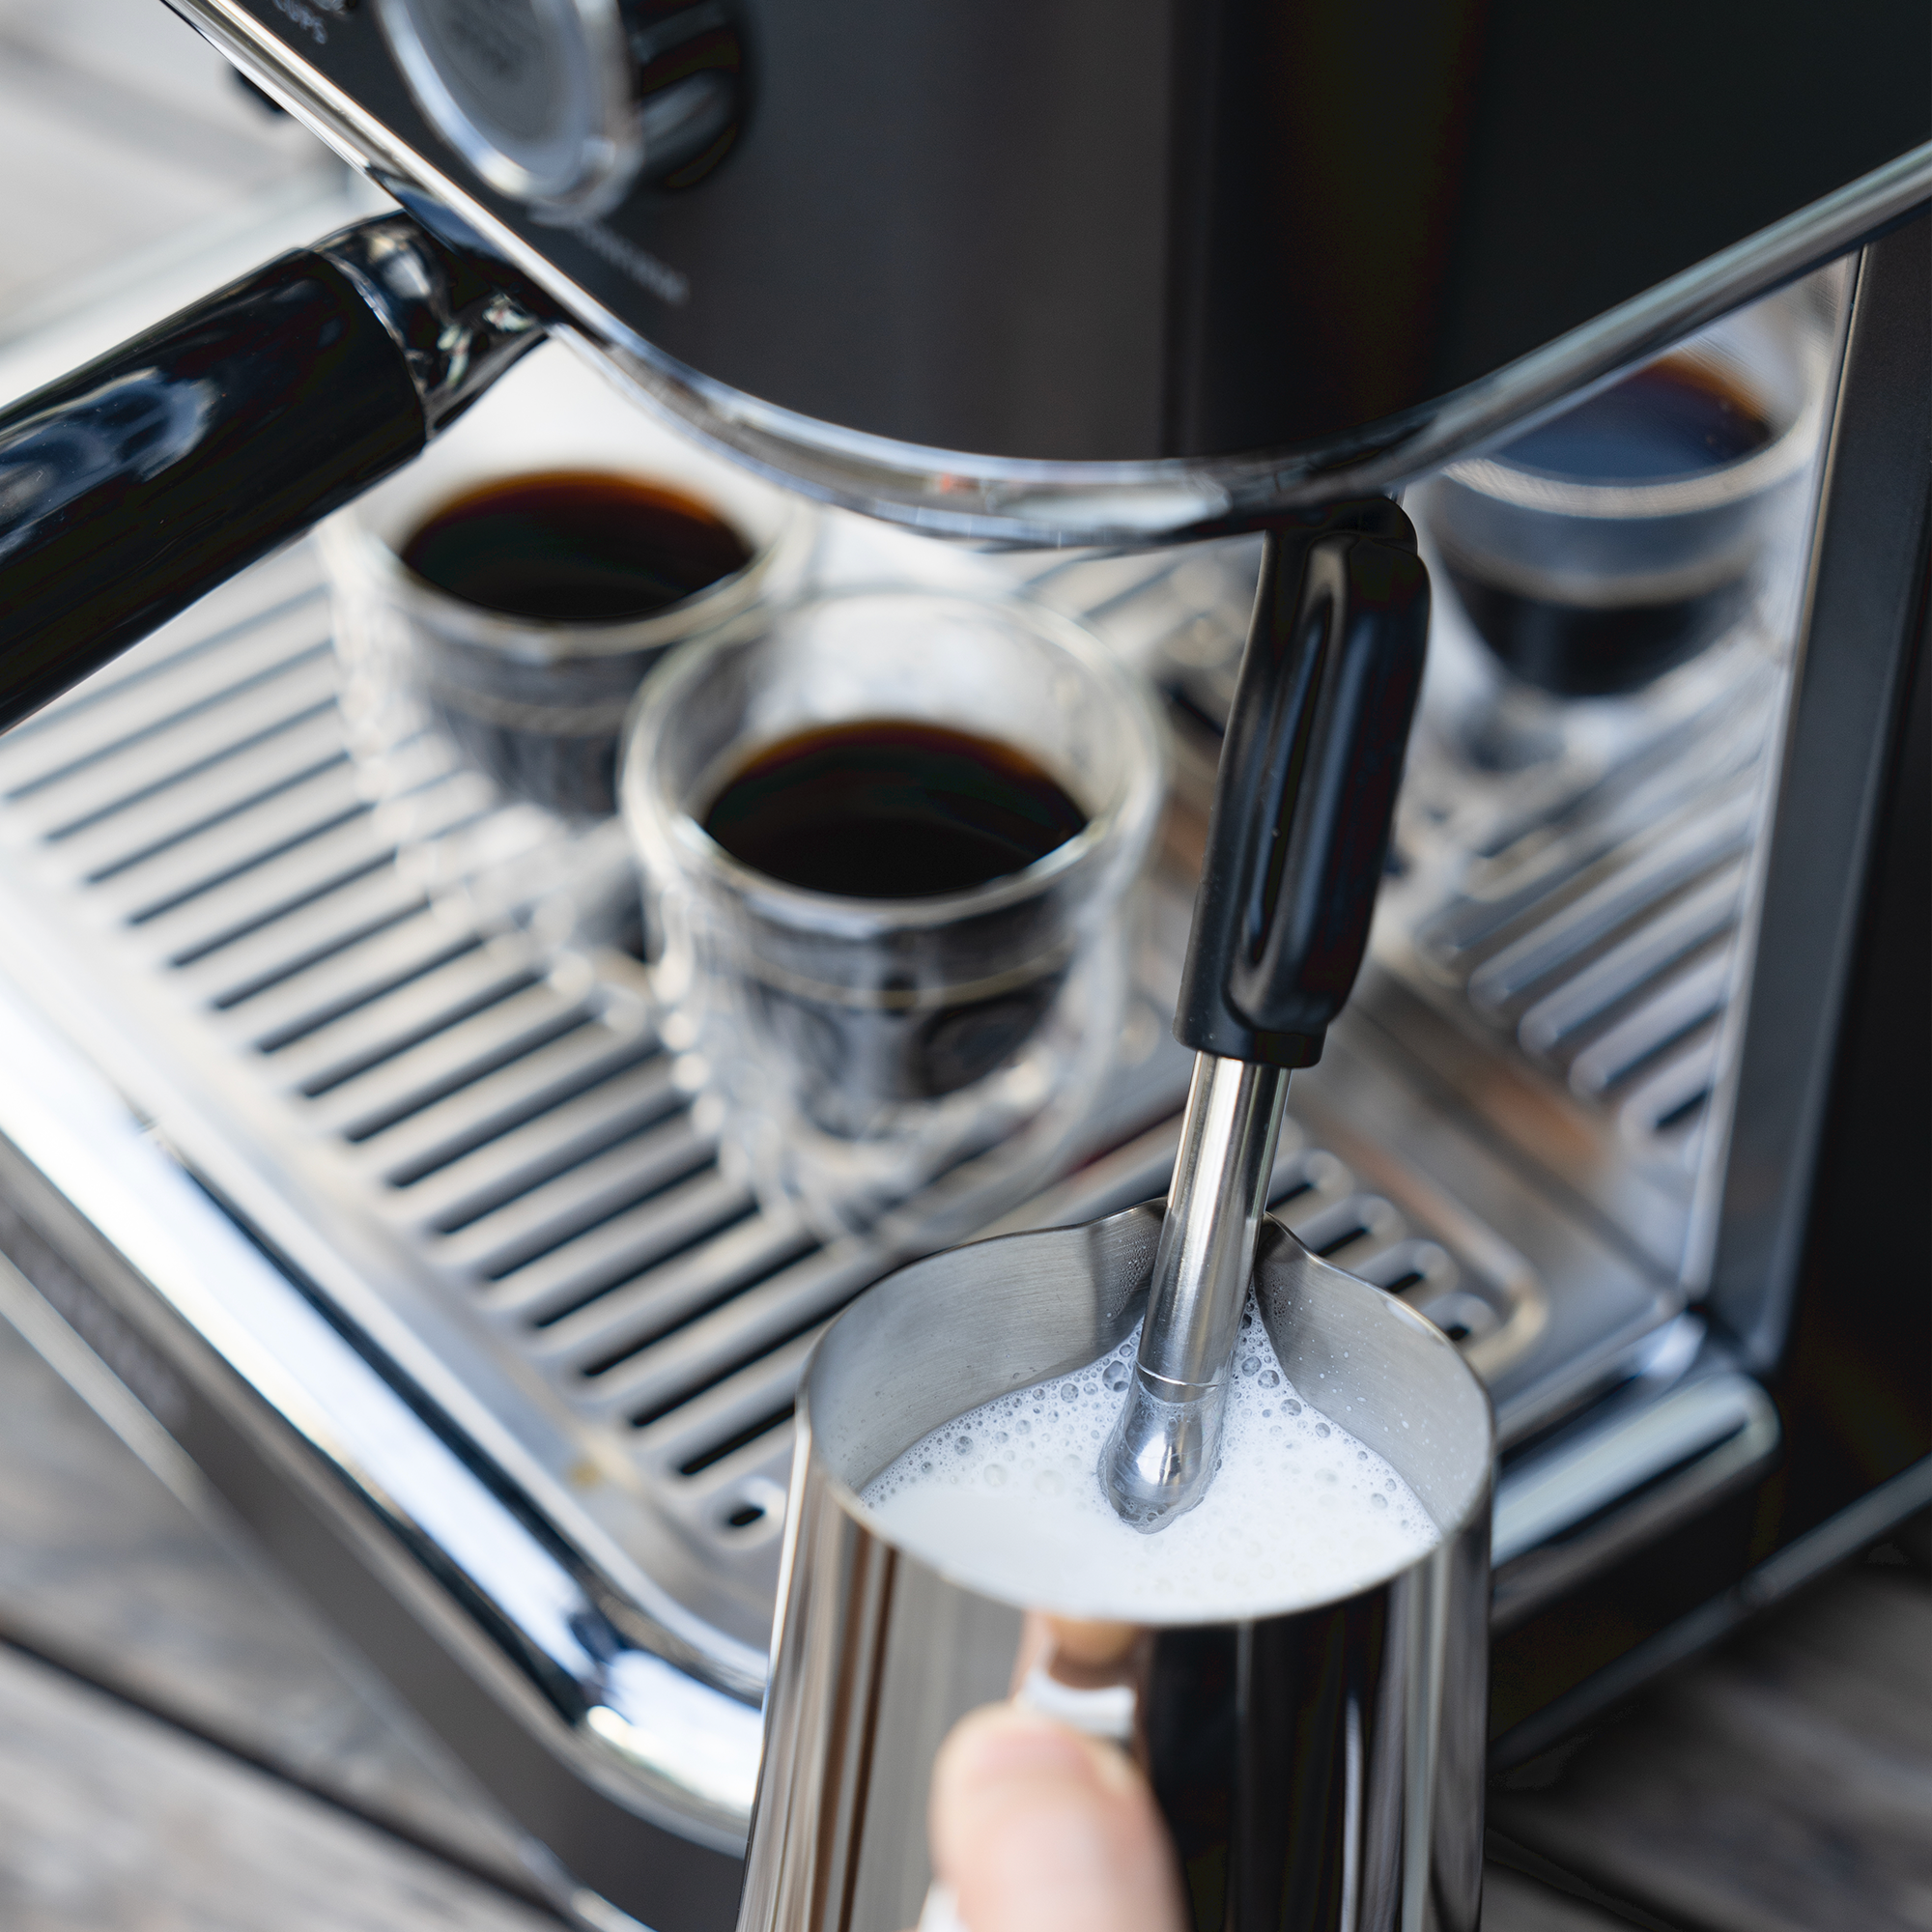 Professional All-in-One Espresso Coffee Machine Americano Maker